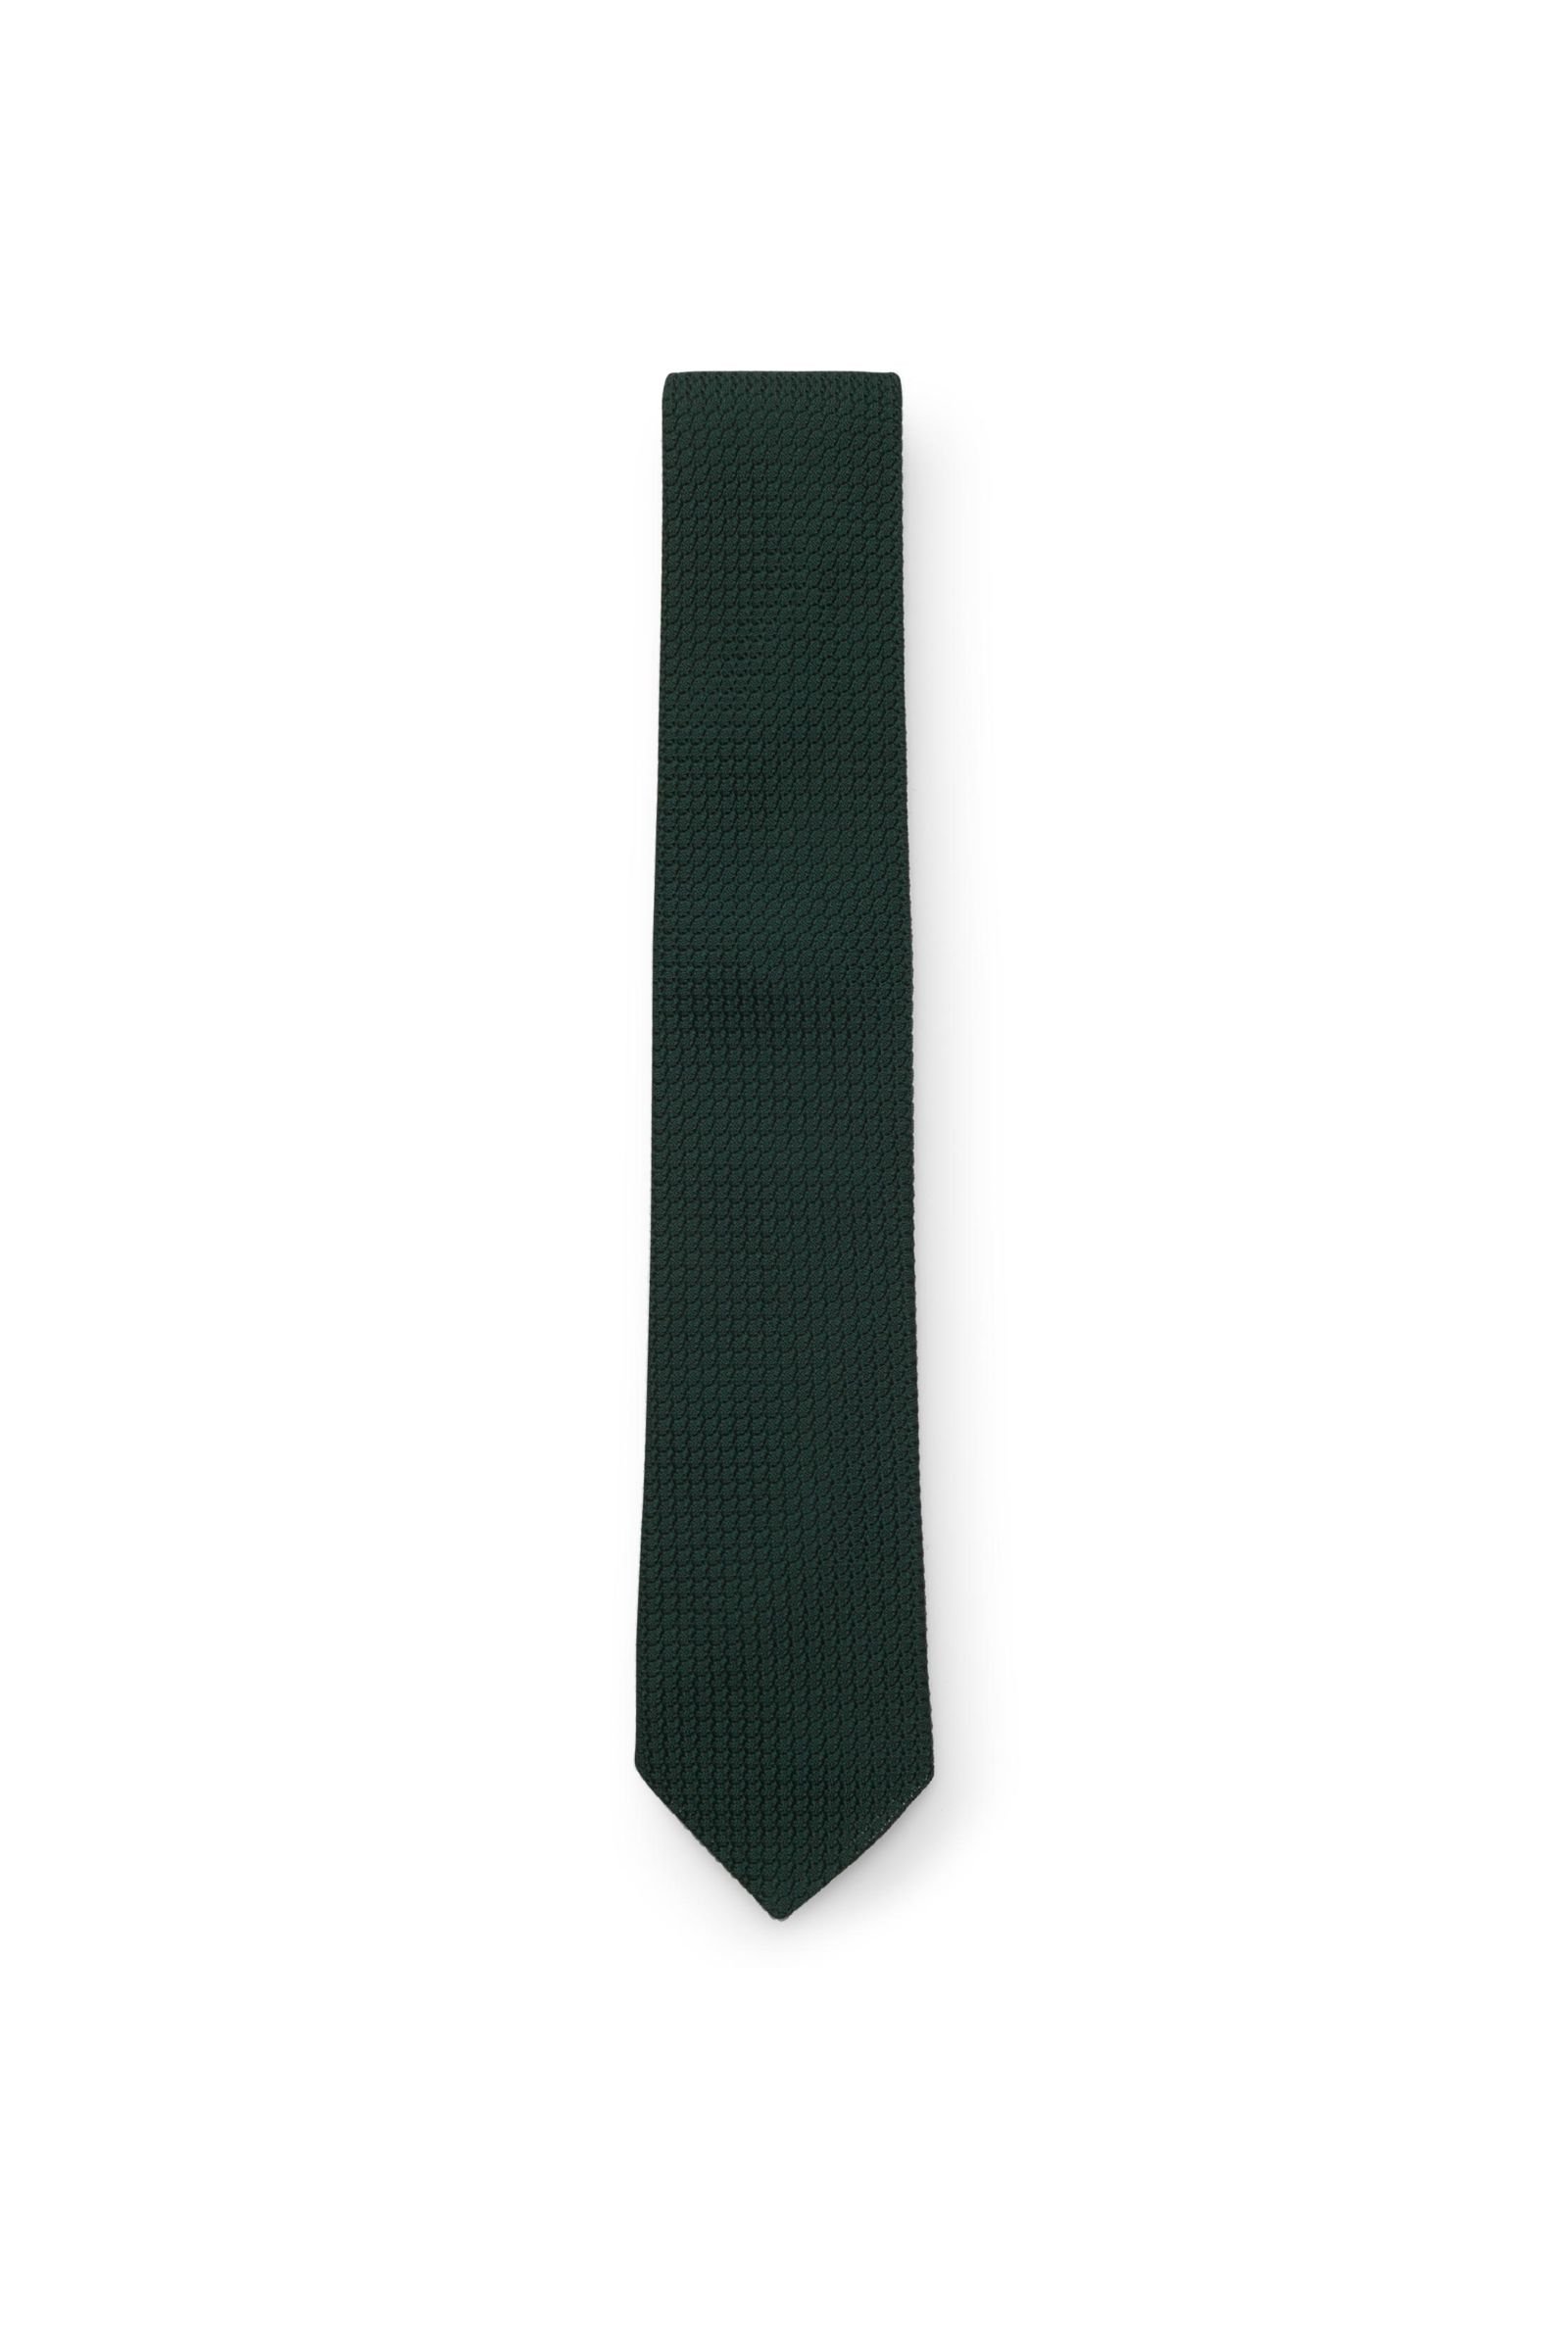 Silk tie dark green